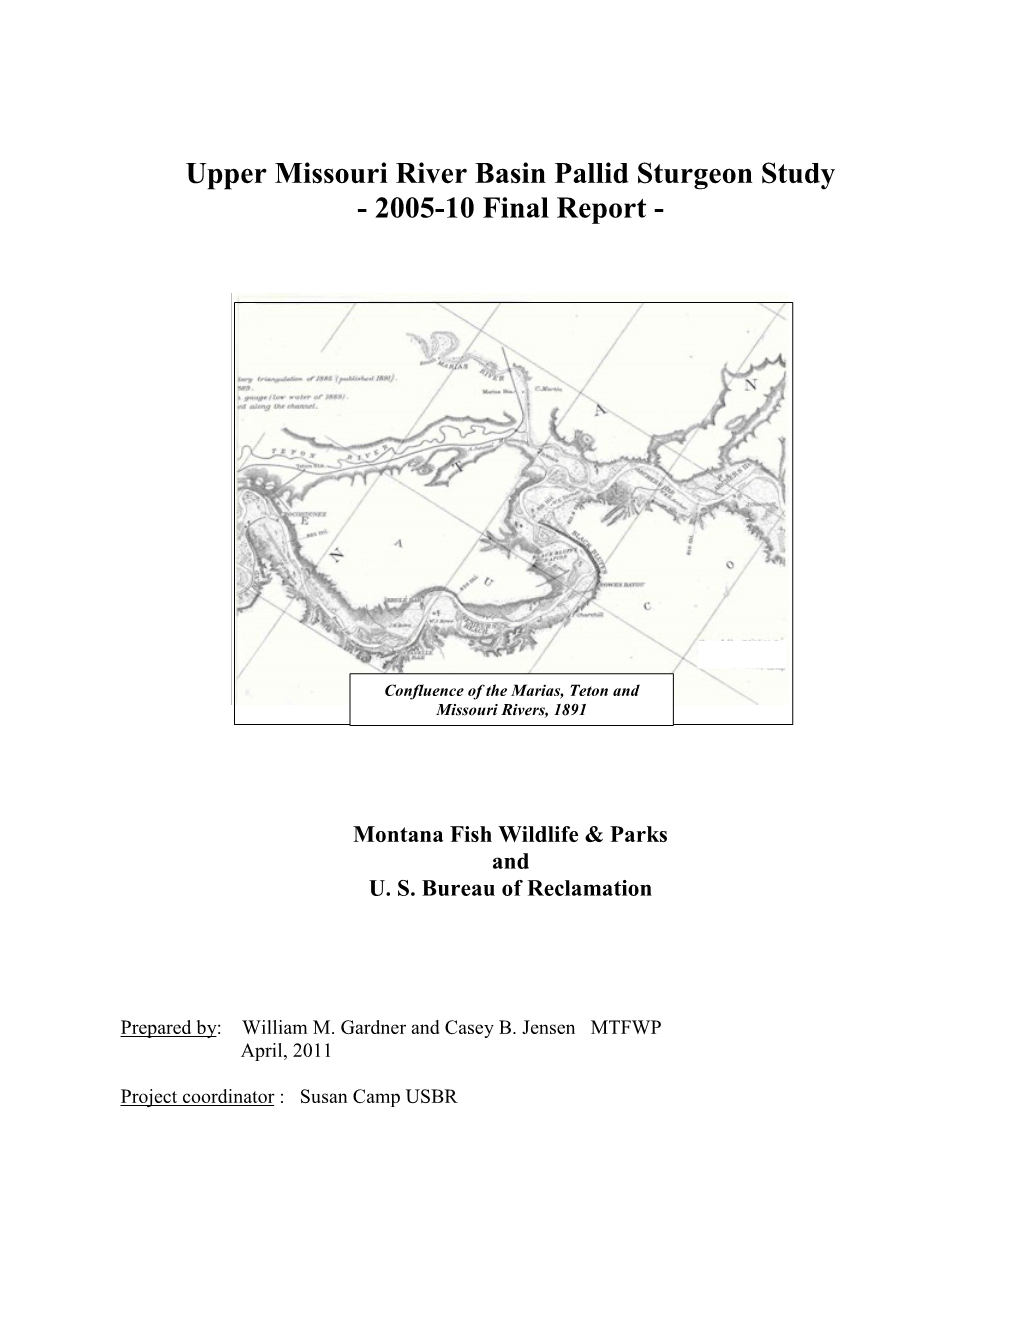 Upper Missouri River Basin Pallid Sturgeon Study - 2005-10 Final Report